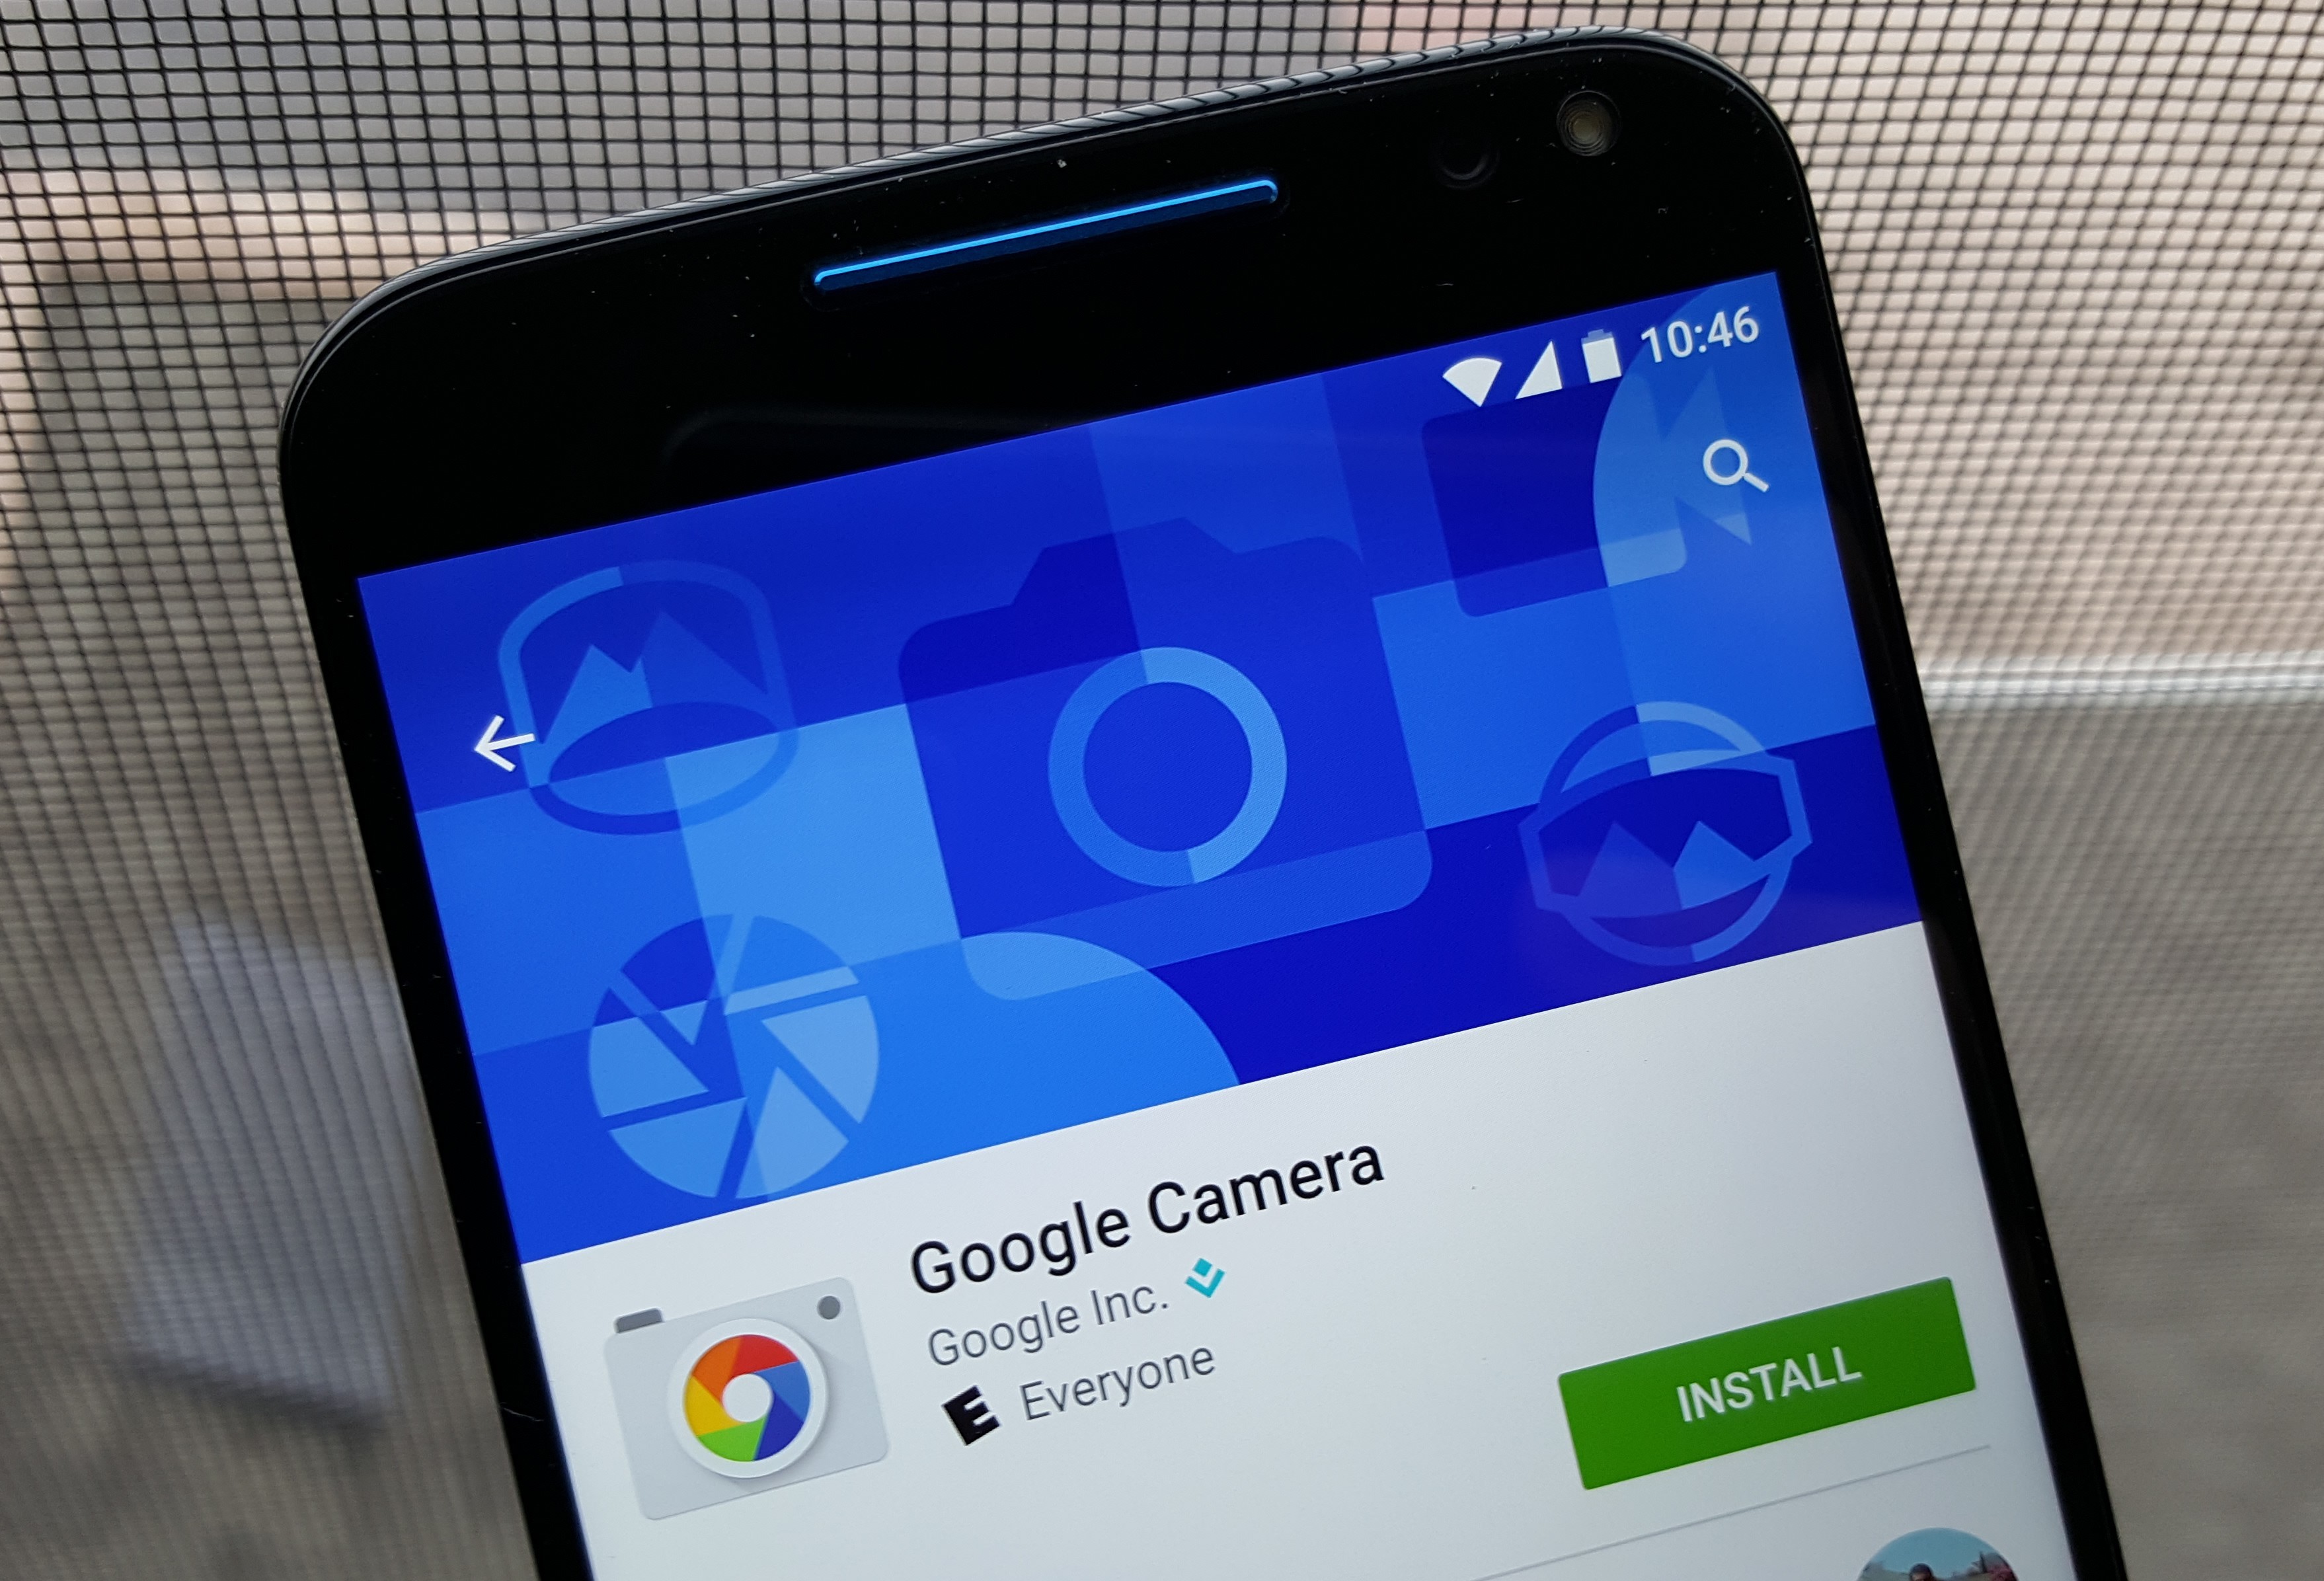 Гугл камера на английском. Гугл камера. Google-камера для смартфона. Приложение Google камера. Иконка Google камеры.